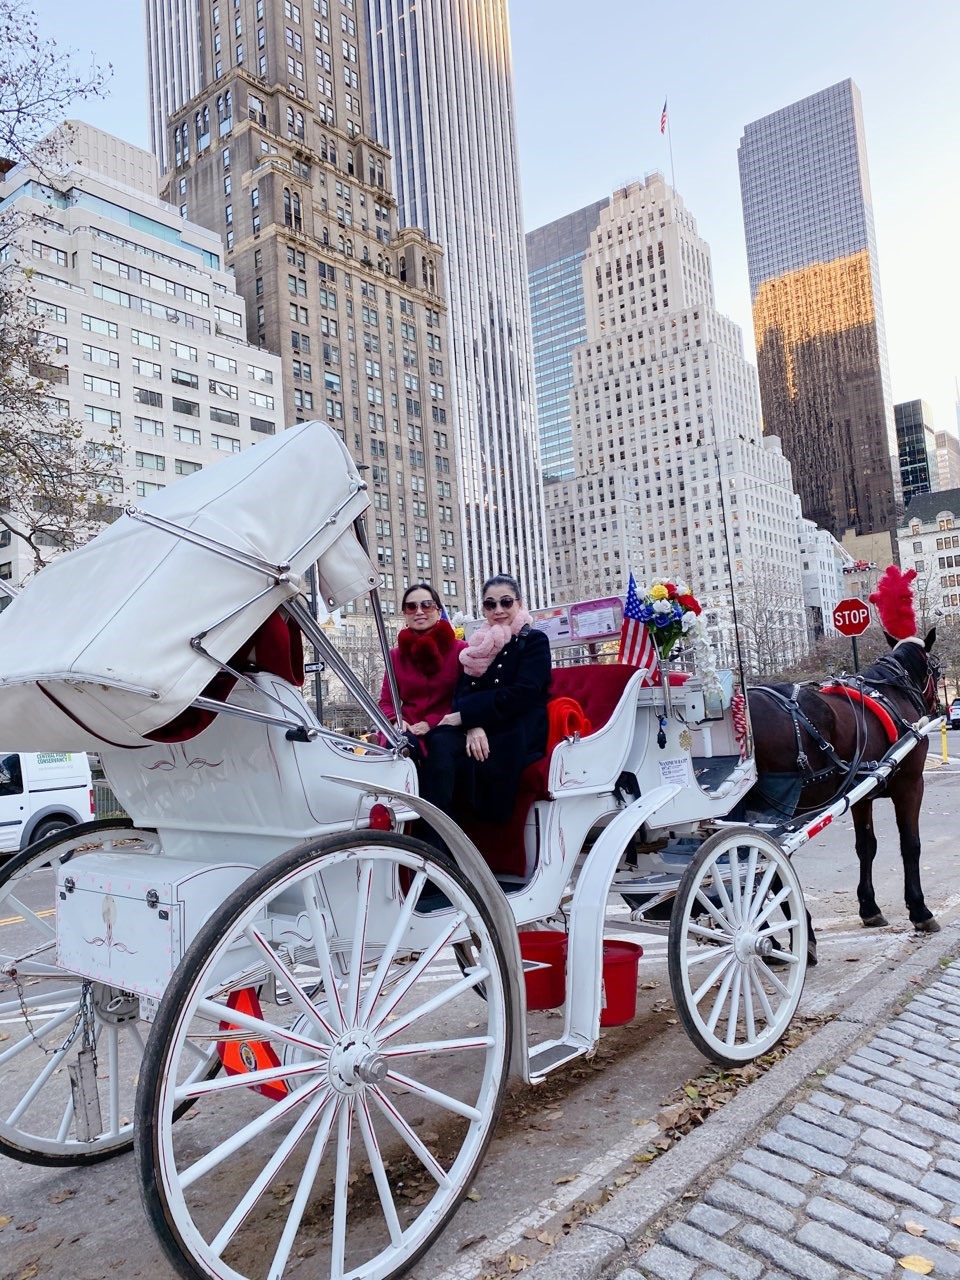 Cả hai cùng ngồi trên xe ngựa ngắm cảnh vòng quanh công viên Central Park (Manhattan), trổ tài làm trò ở trước các cửa tiệm của mall Macy và mall Saks Fifth - nơi được trang hoàng lộng lẫy để chào đón mùa lễ hội lớn nhất năm.